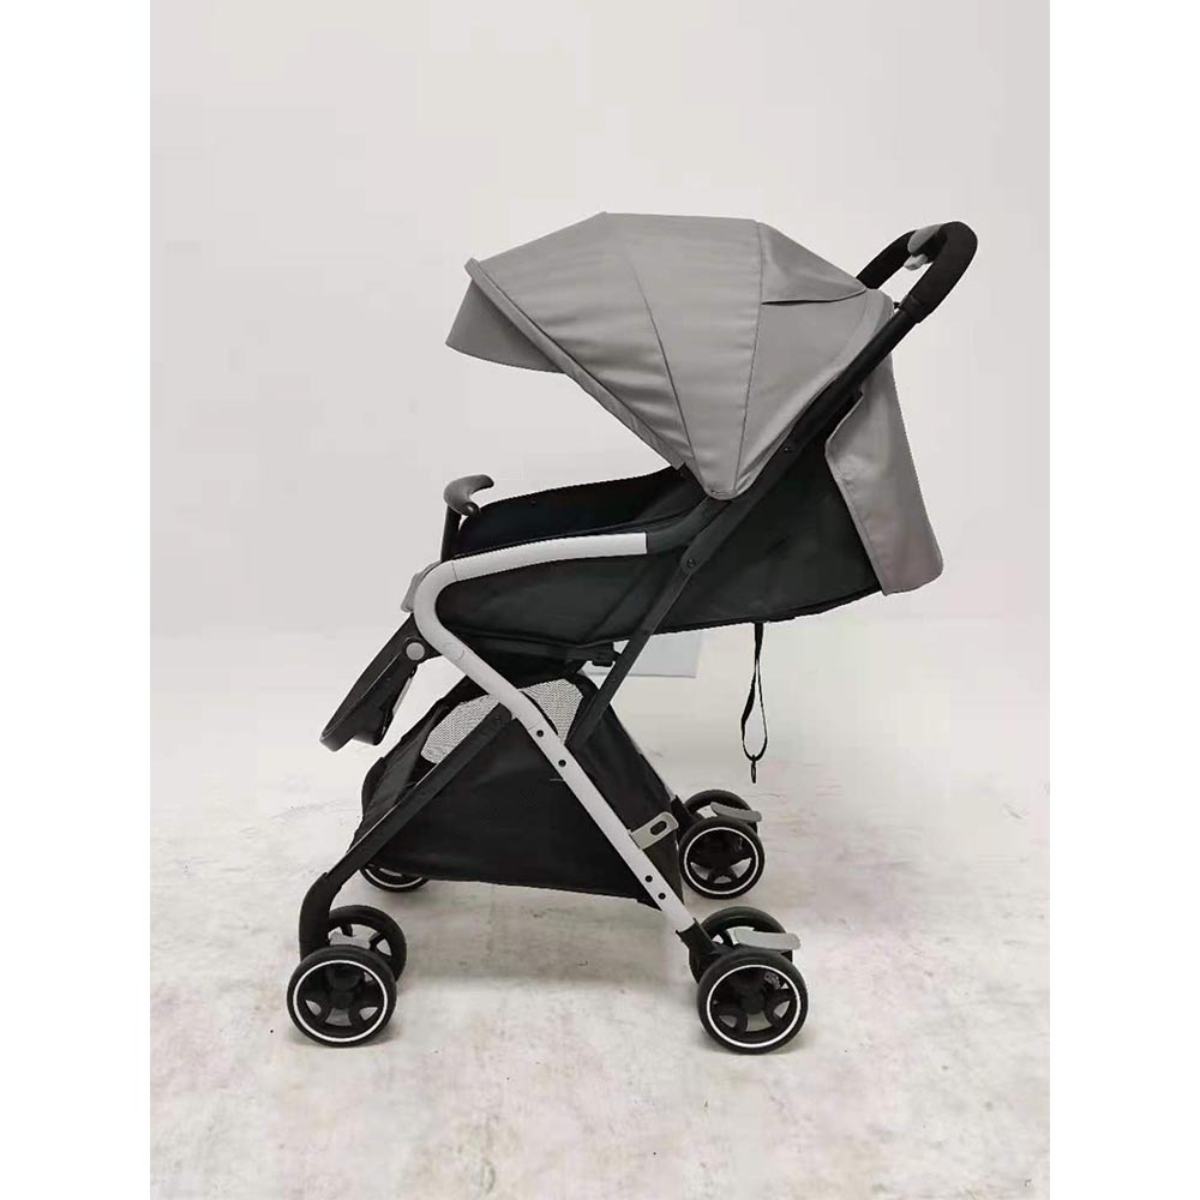 Babytrend Compact Stroller (0-20kg) - Grey